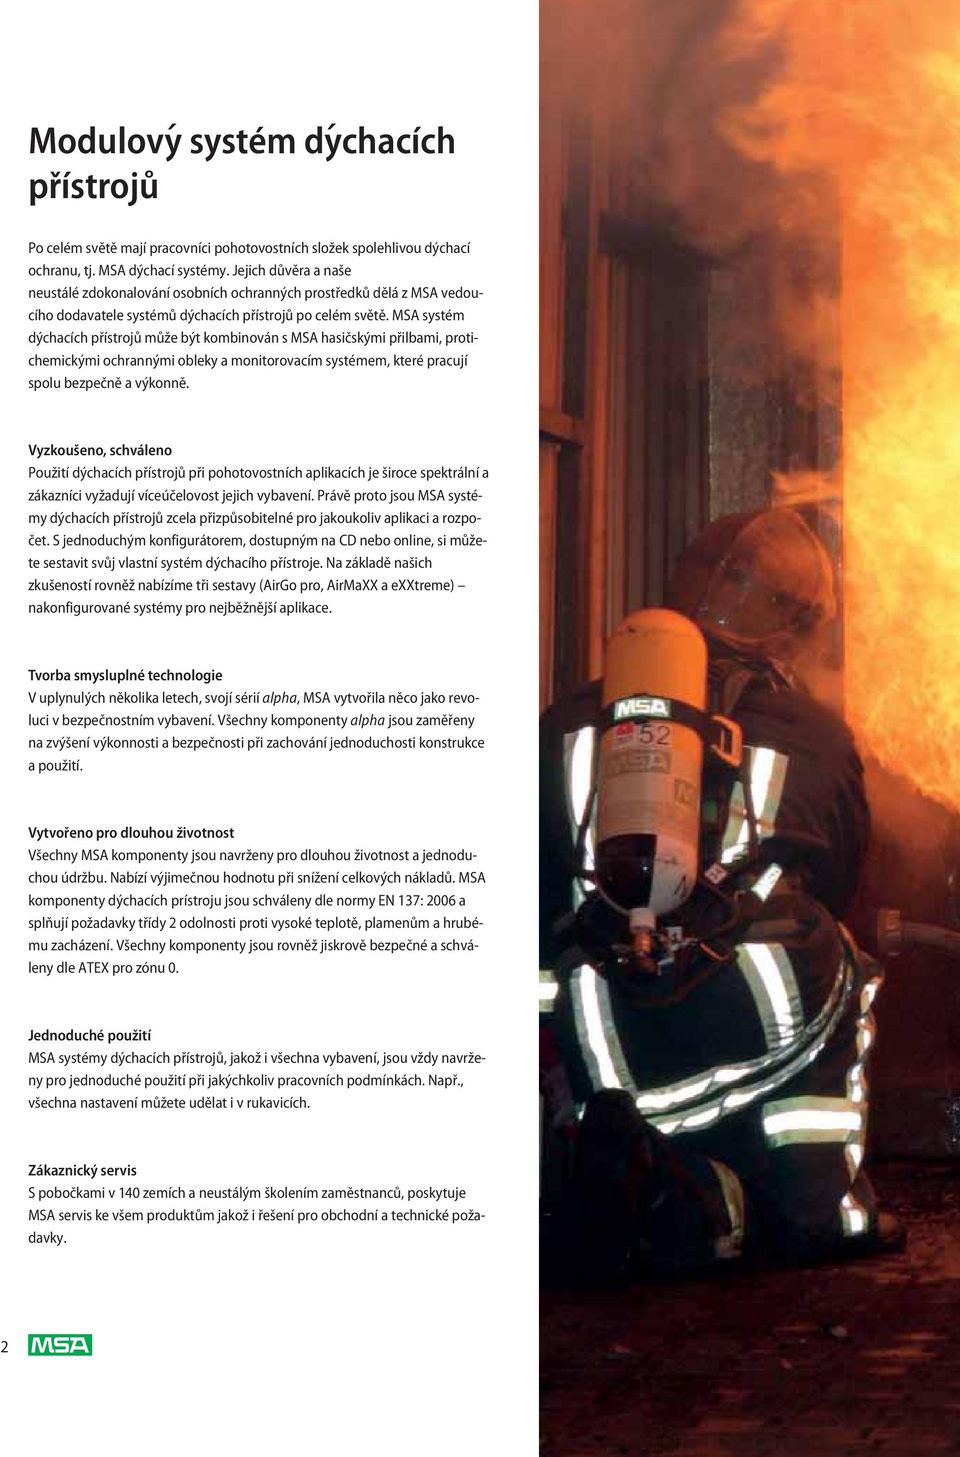 MSA systém dýchacích přístrojů může být kombinován s MSA hasičskými přilbami, protichemickými ochrannými obleky a monitorovacím systémem, které pracují spolu bezpečně a výkonně.